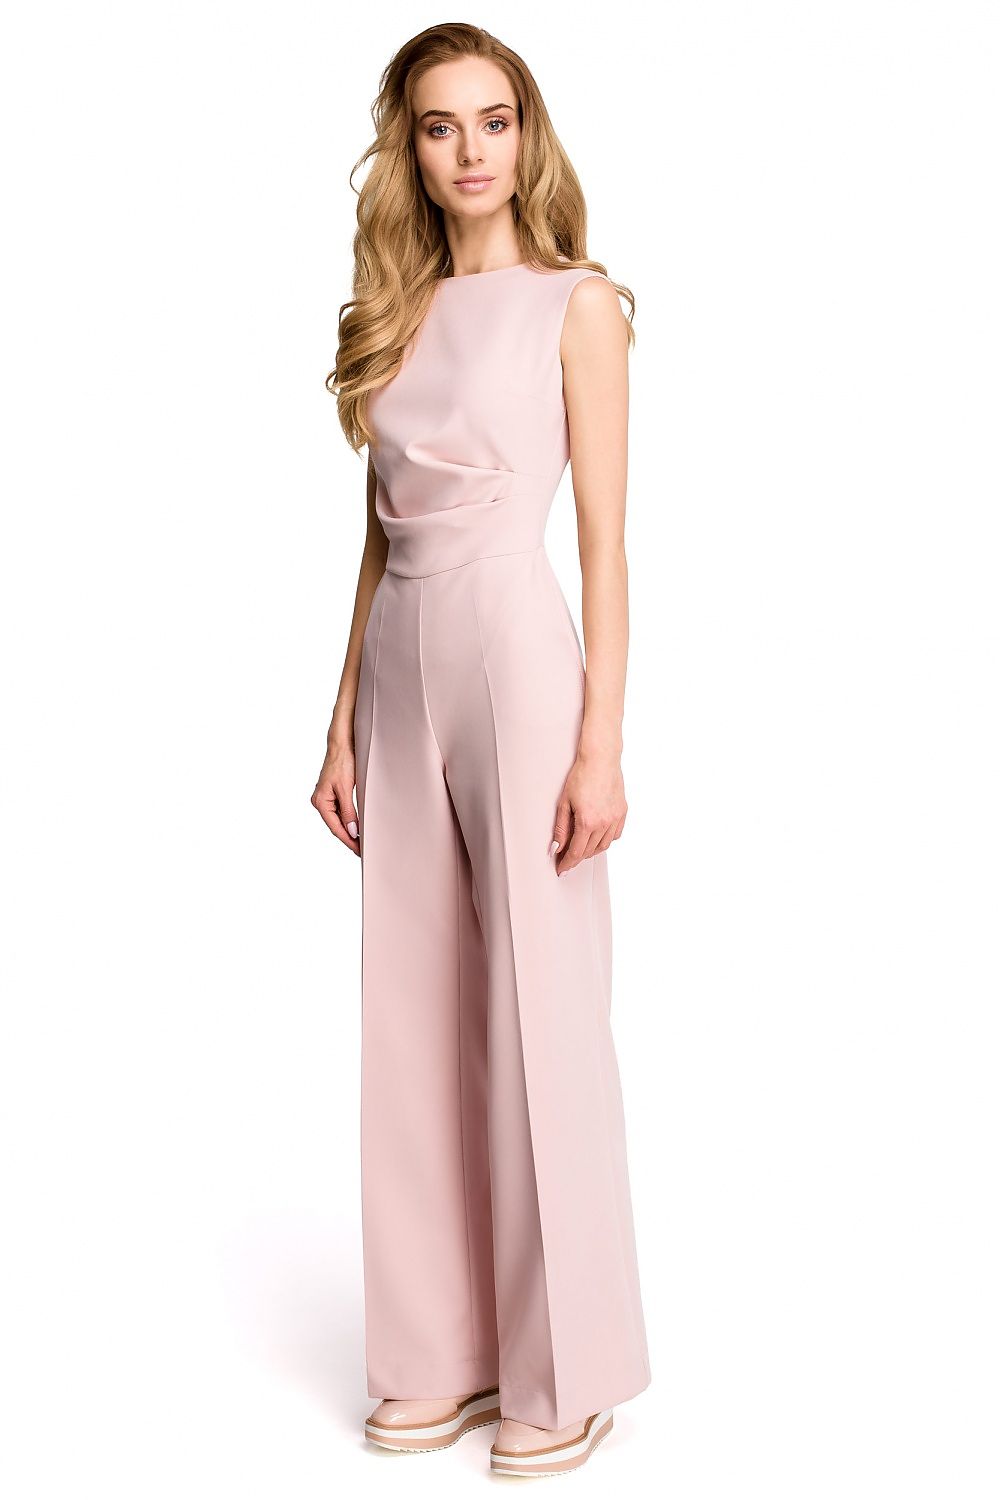 Mark Dierentuin s nachts voorraad broekpak model 116635 Stylove overalls groothandel dameskleding online